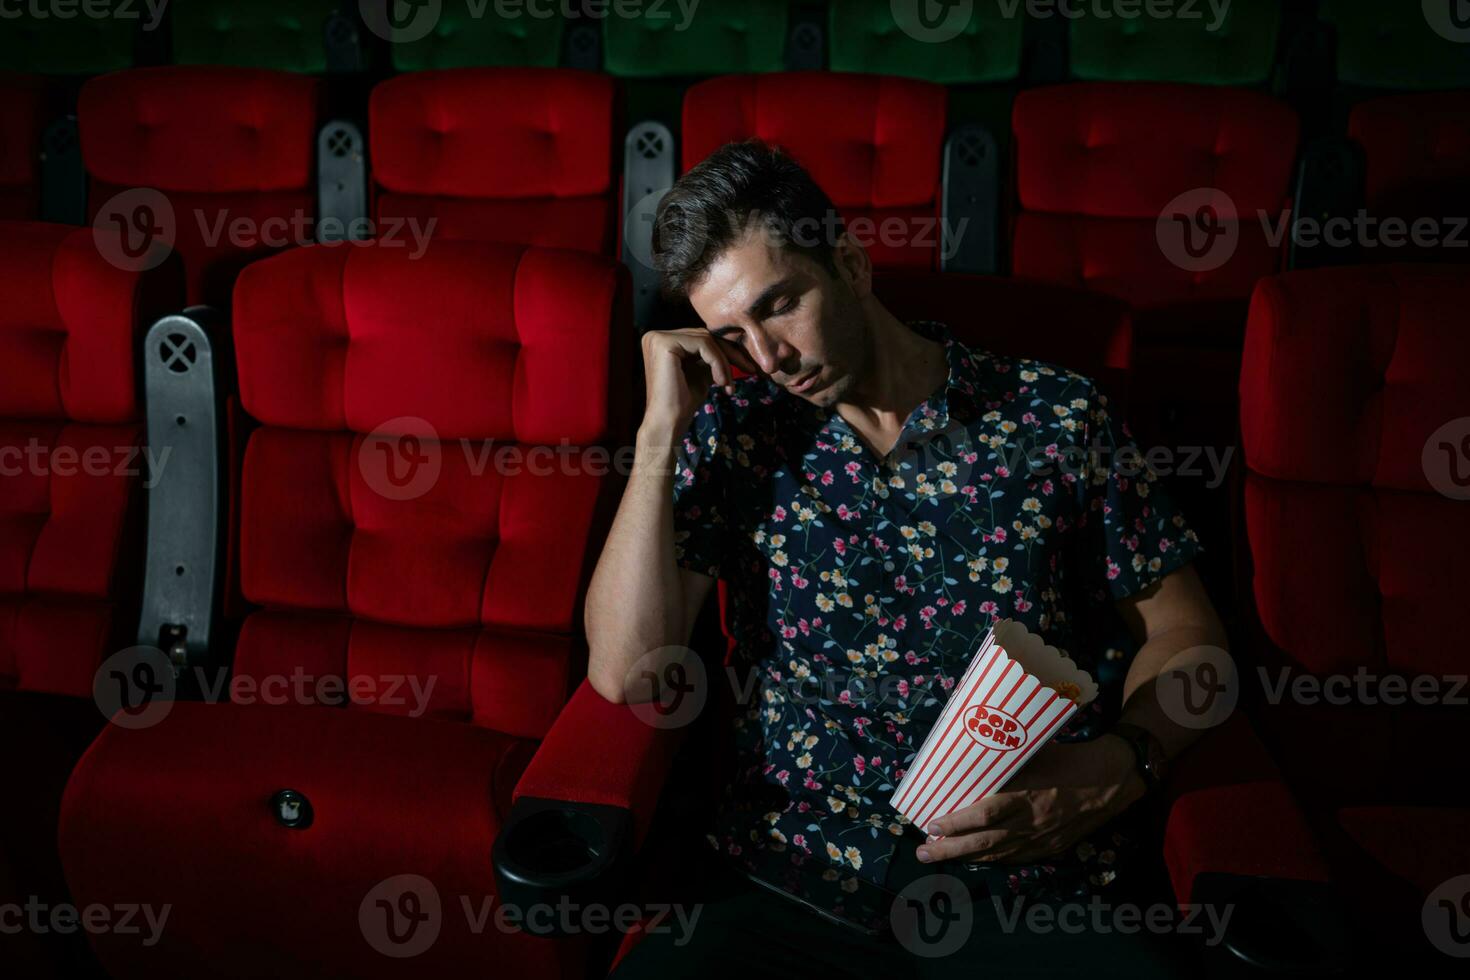 homme chutes endormi tandis que en train de regarder film dans cinéma et pop corn dans main, film manquant intéressant et ennuyeux. photo